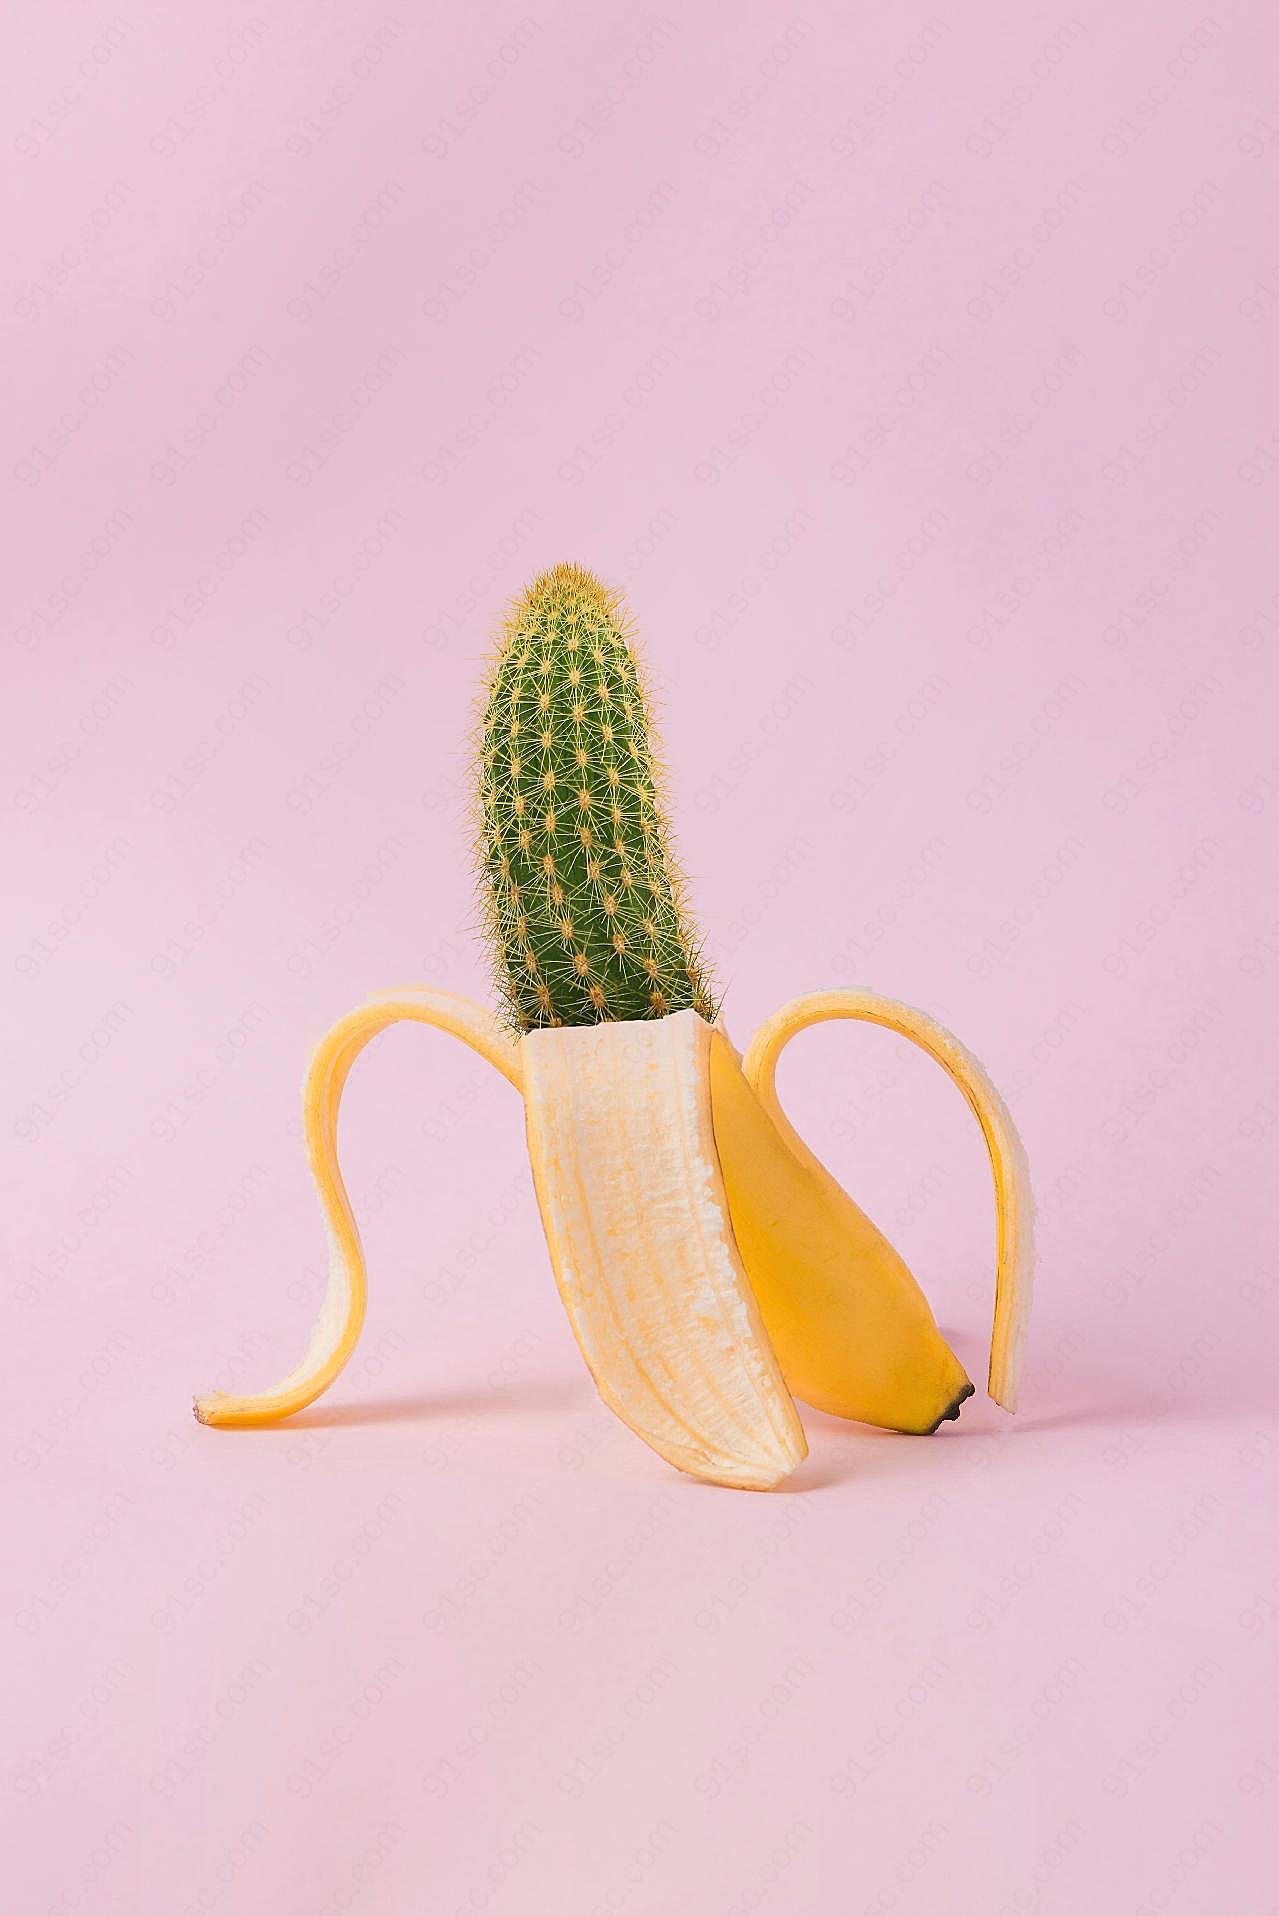 另类香蕉创意图片摄影高清